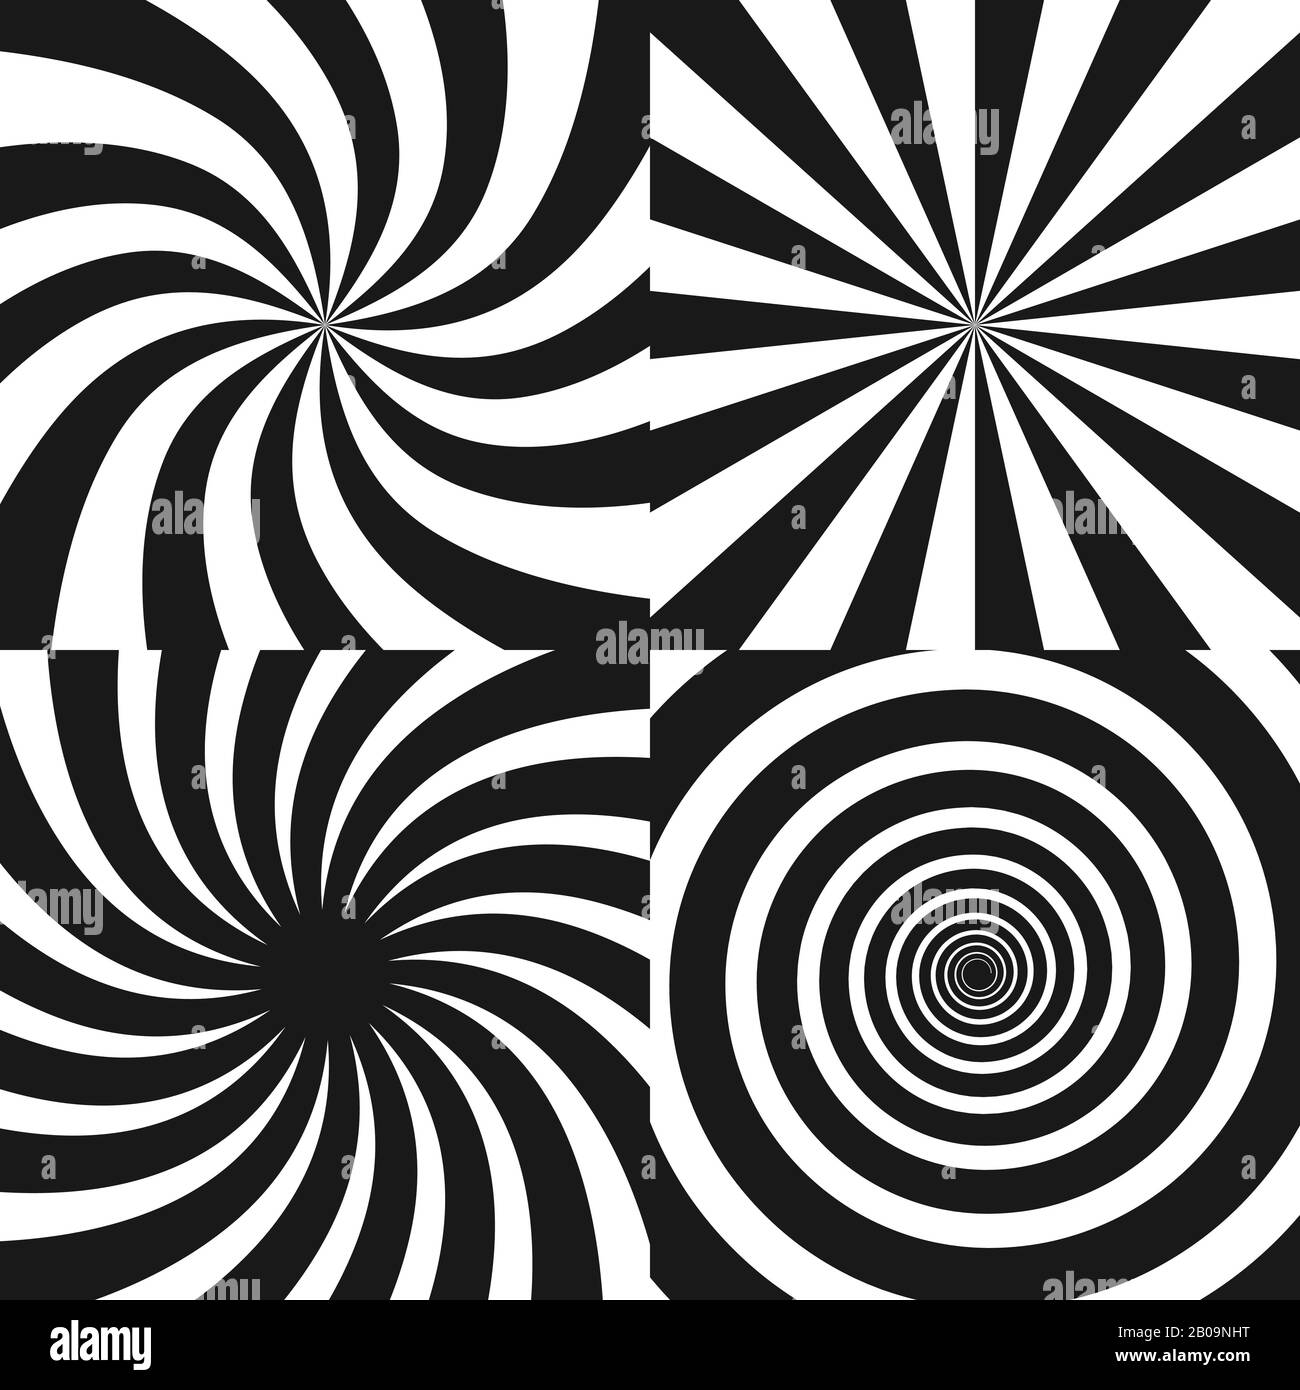 Psychedelische Spirale mit Radialstrahlen, Twirl, verdrehten Comic-Effekt, Wirbelhintergrund - Vektorsatz. Psychedelischer Wirbel-Schwarz-weiße Spirale, Effekt der hypnotischen radialen Wirbel-Darstellung Stock Vektor